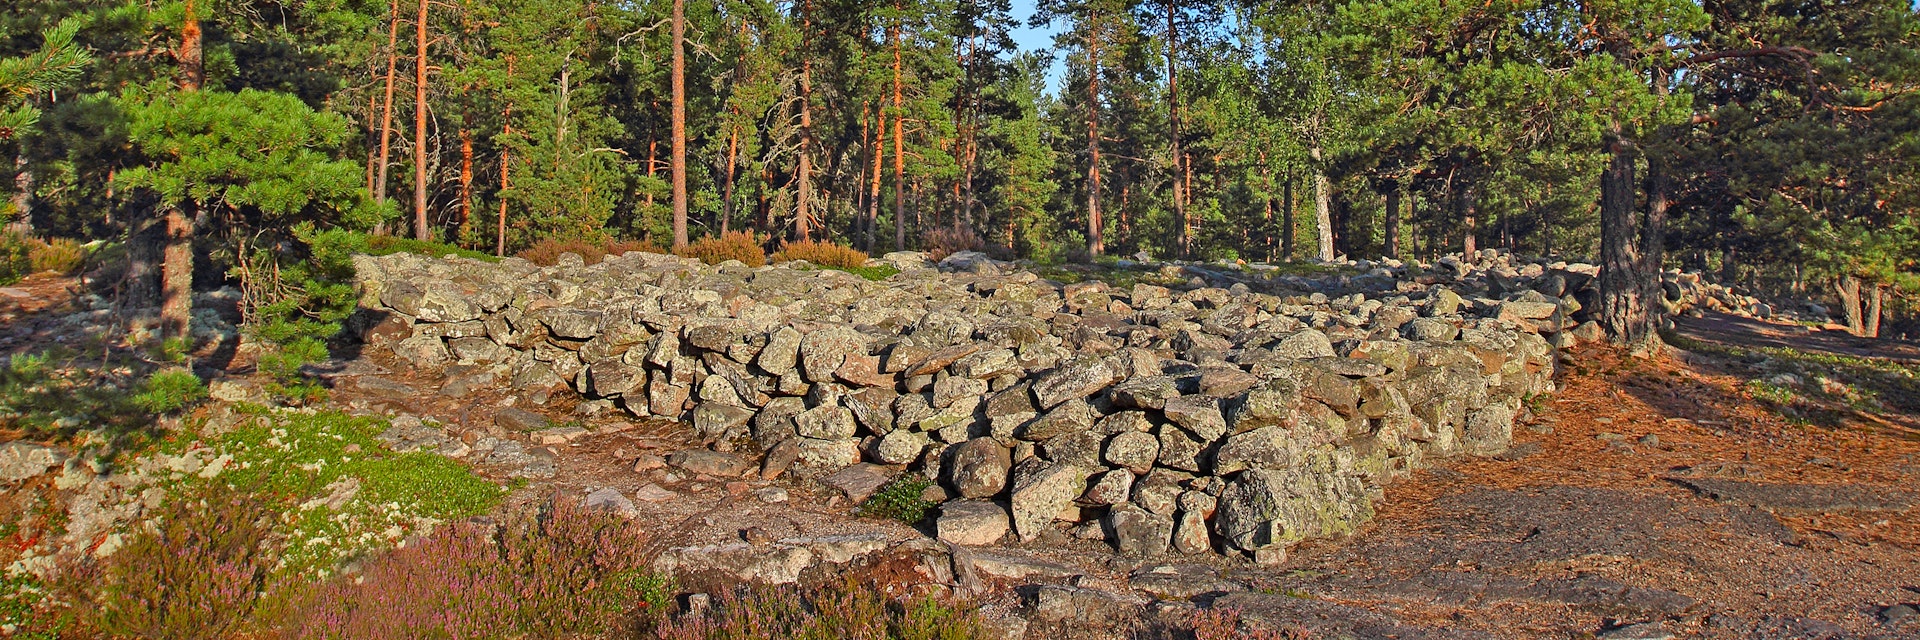 Bronze Age Burial Site of Sammallahdenmäki, Finland, UNESCO World Heritage Site.